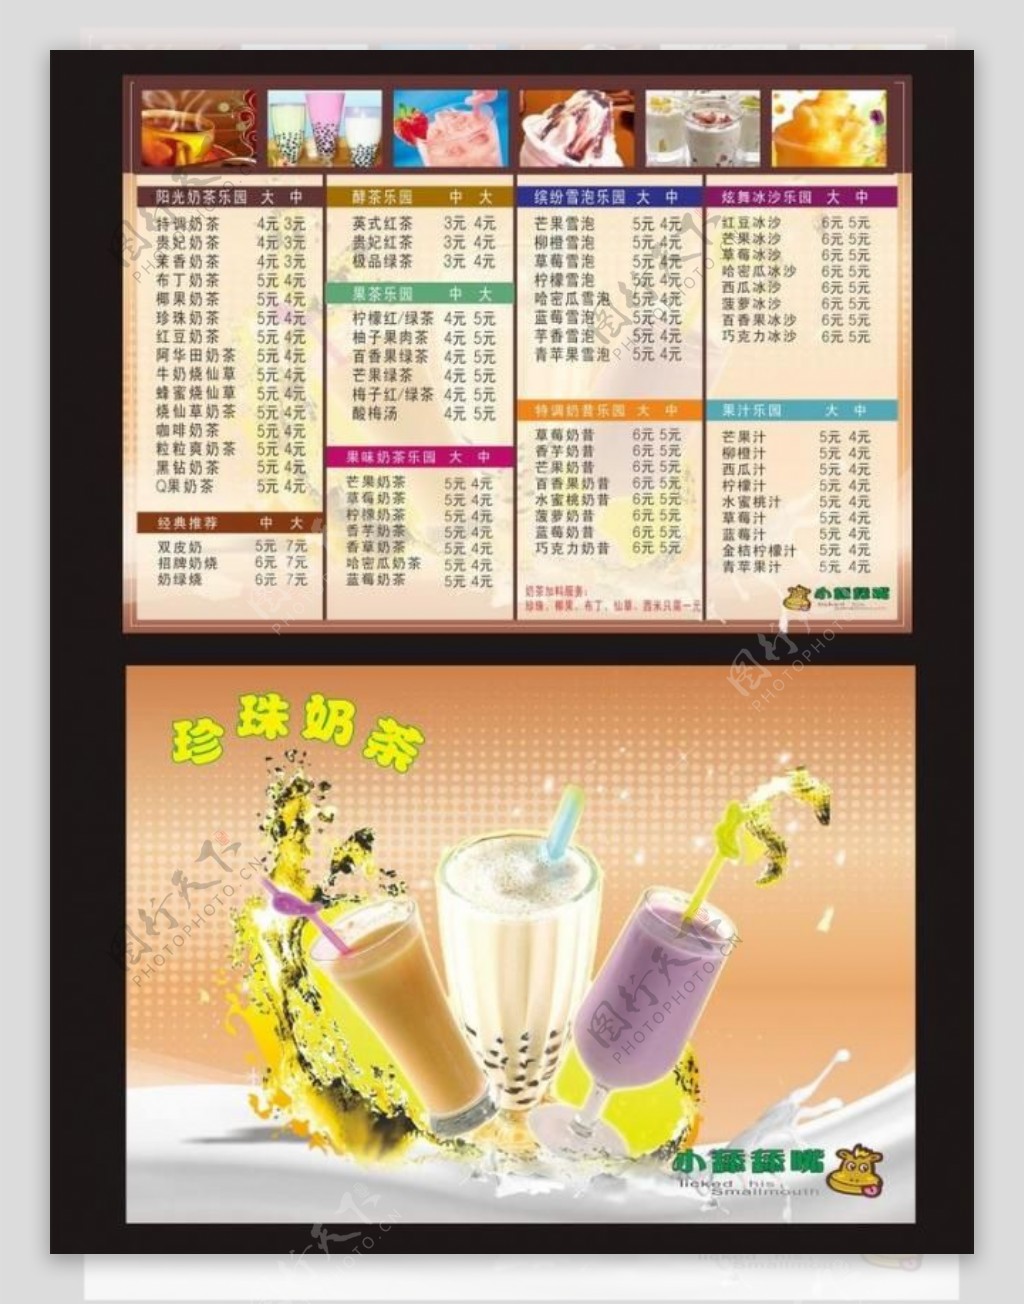 奶茶价格表图片